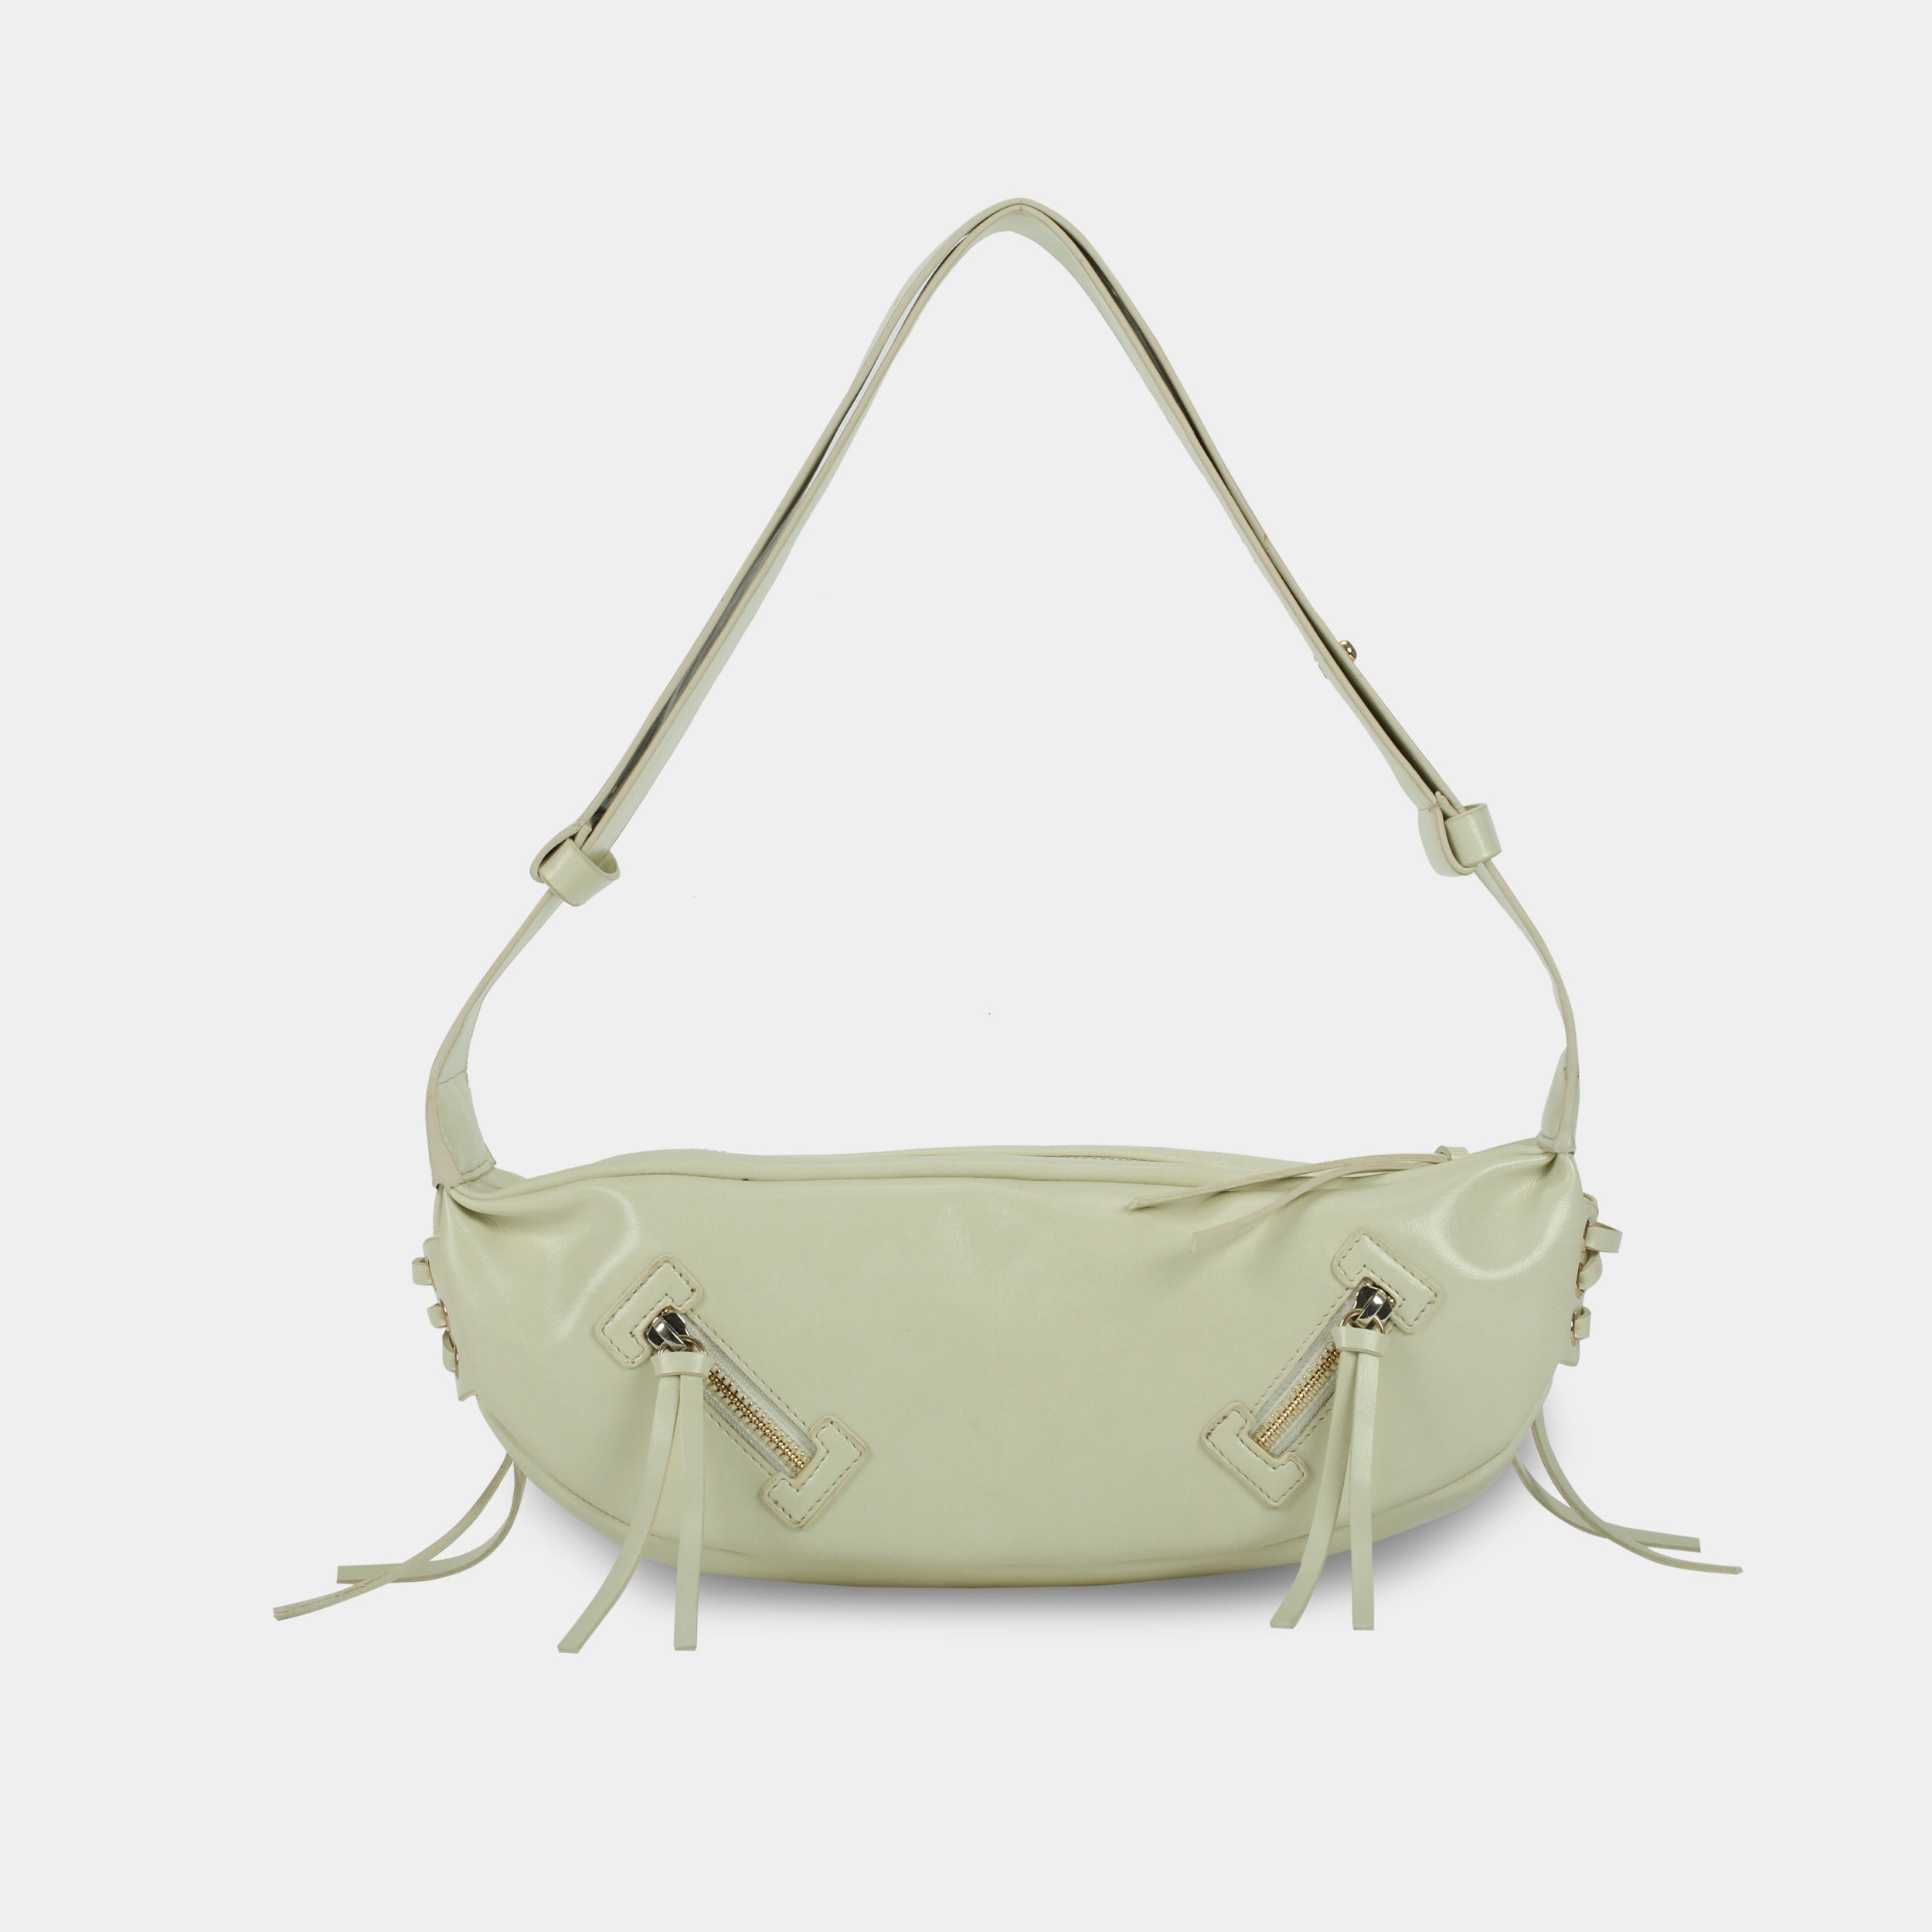 LACE bag large size (M) white color